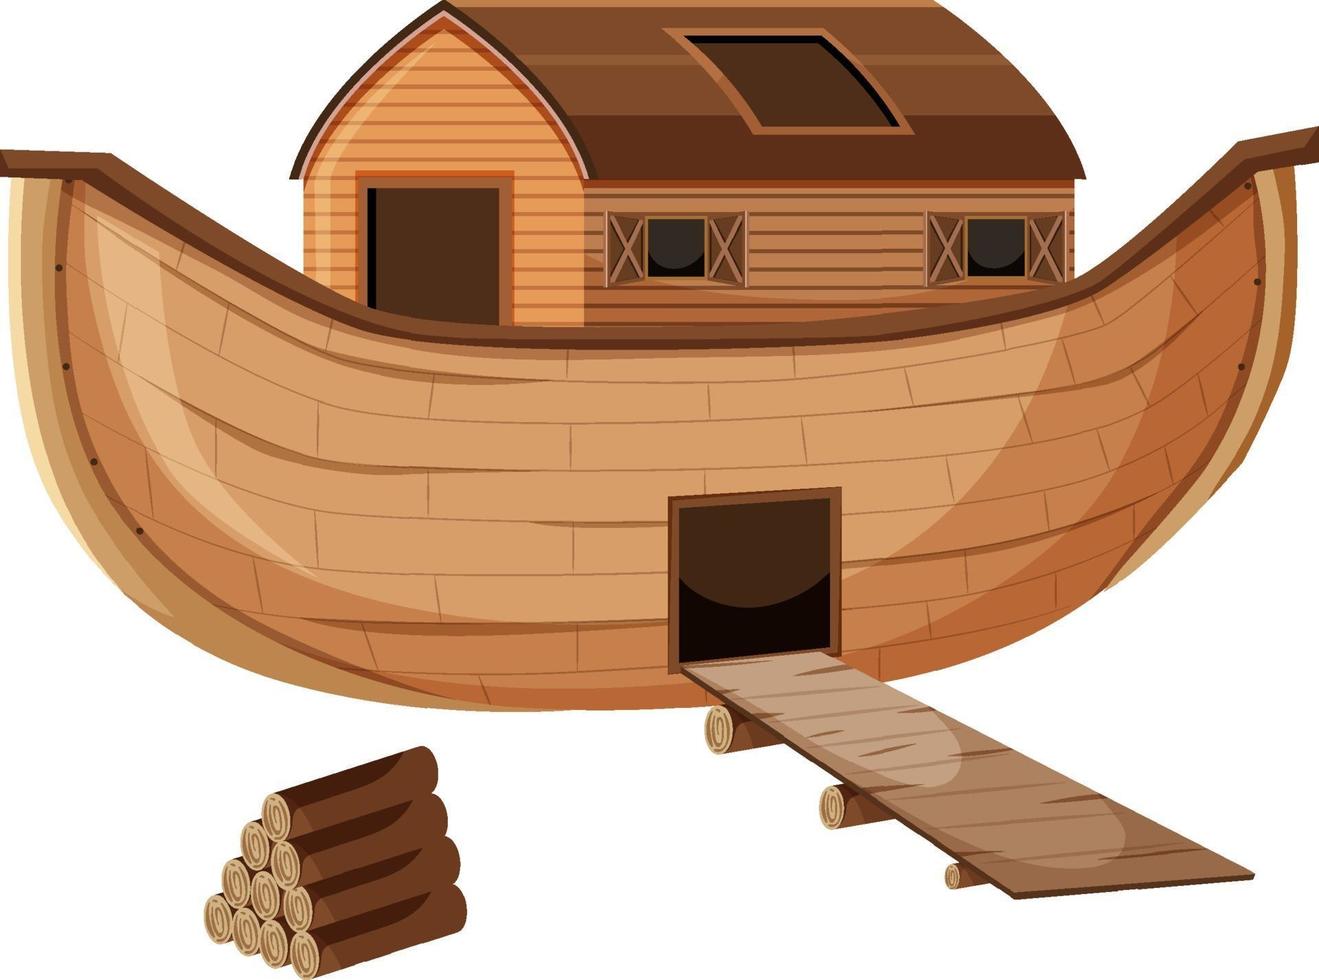 Blank Noah's Ark cartoon style isolated vector